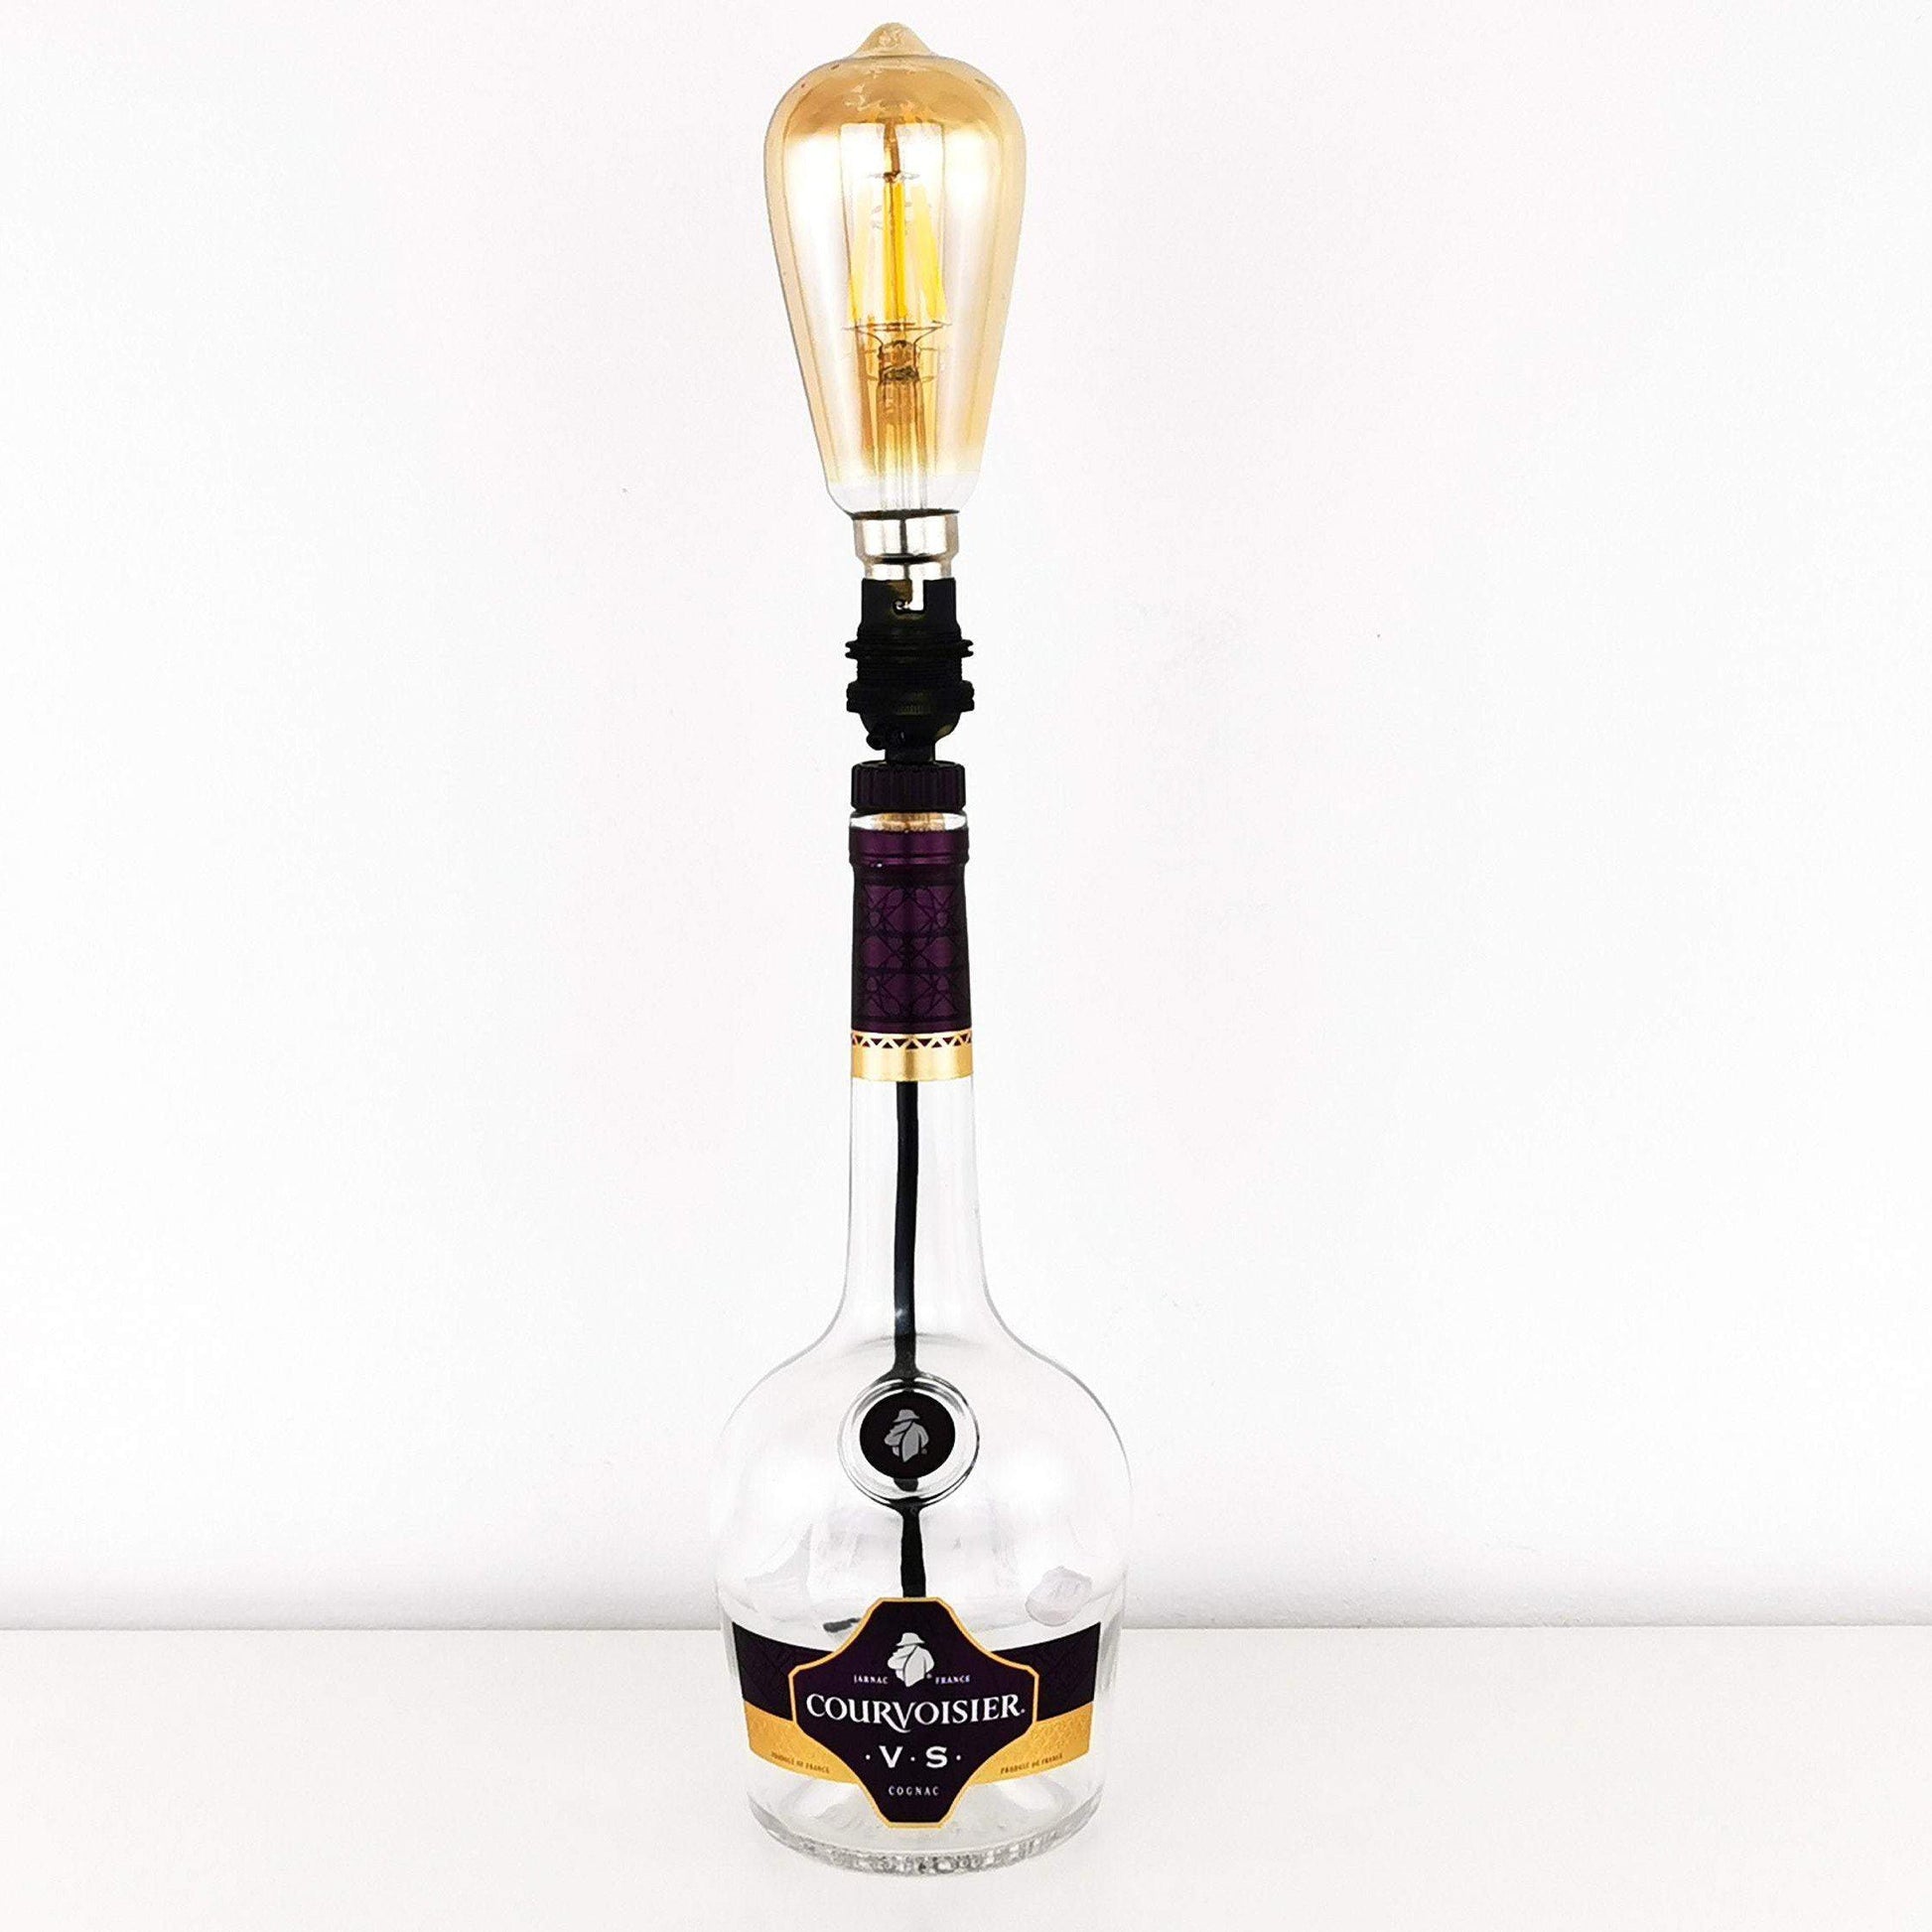 Courvoisier Cognac Bottle Table Lamp Brandy & Cognac Bottle Candles